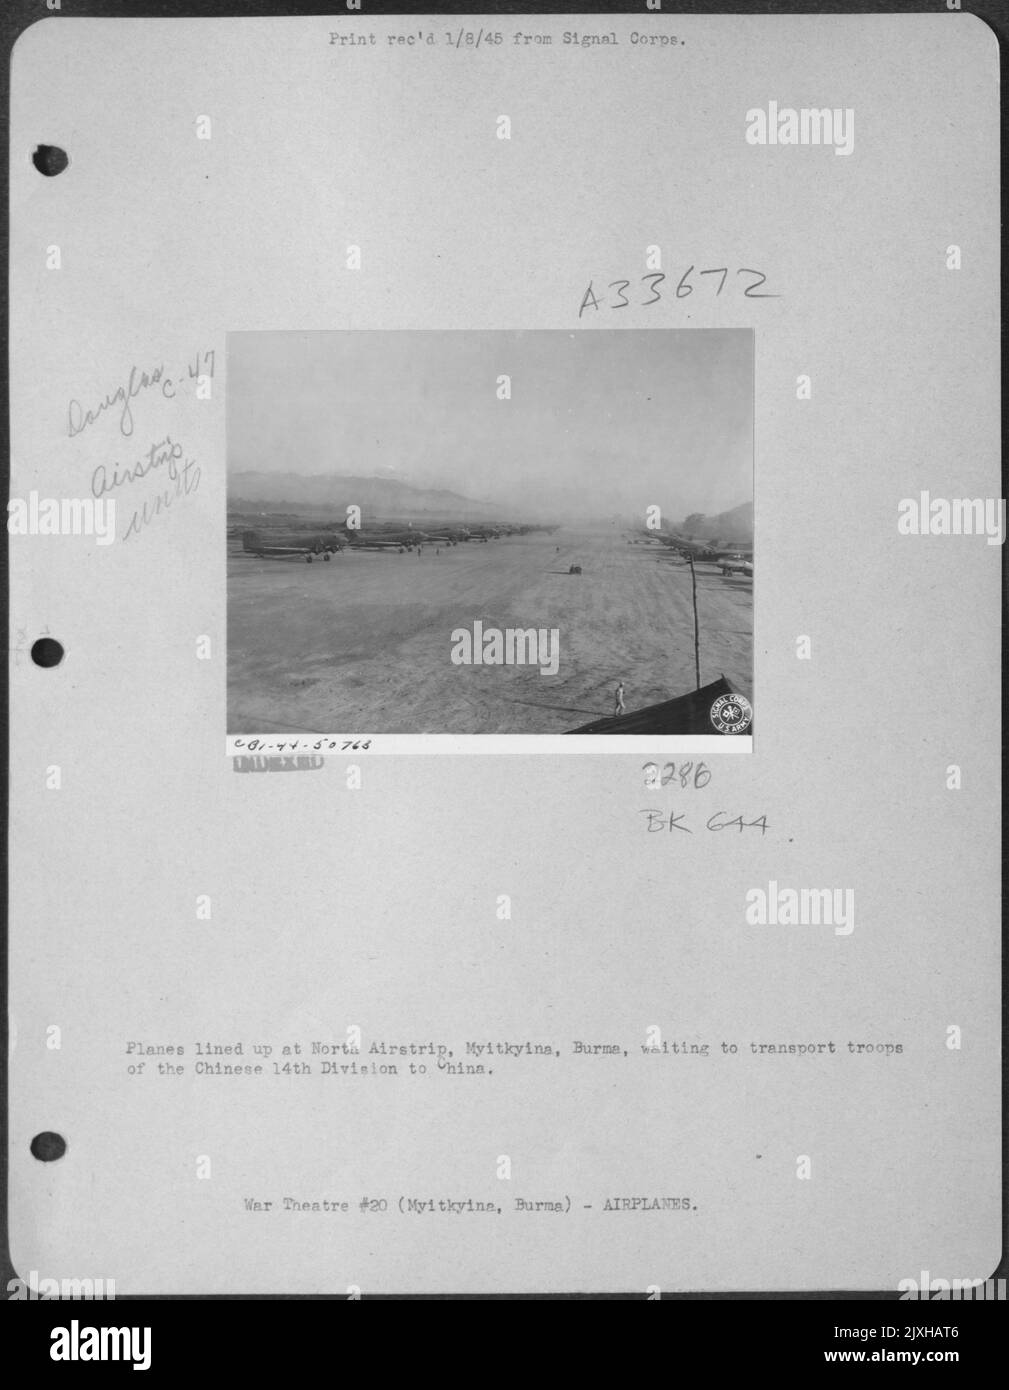 Flugzeuge standen am North Airstrip, Myitkyina, Burma, an, um Truppen der chinesischen 14 Division nach China zu transportieren. Stockfoto